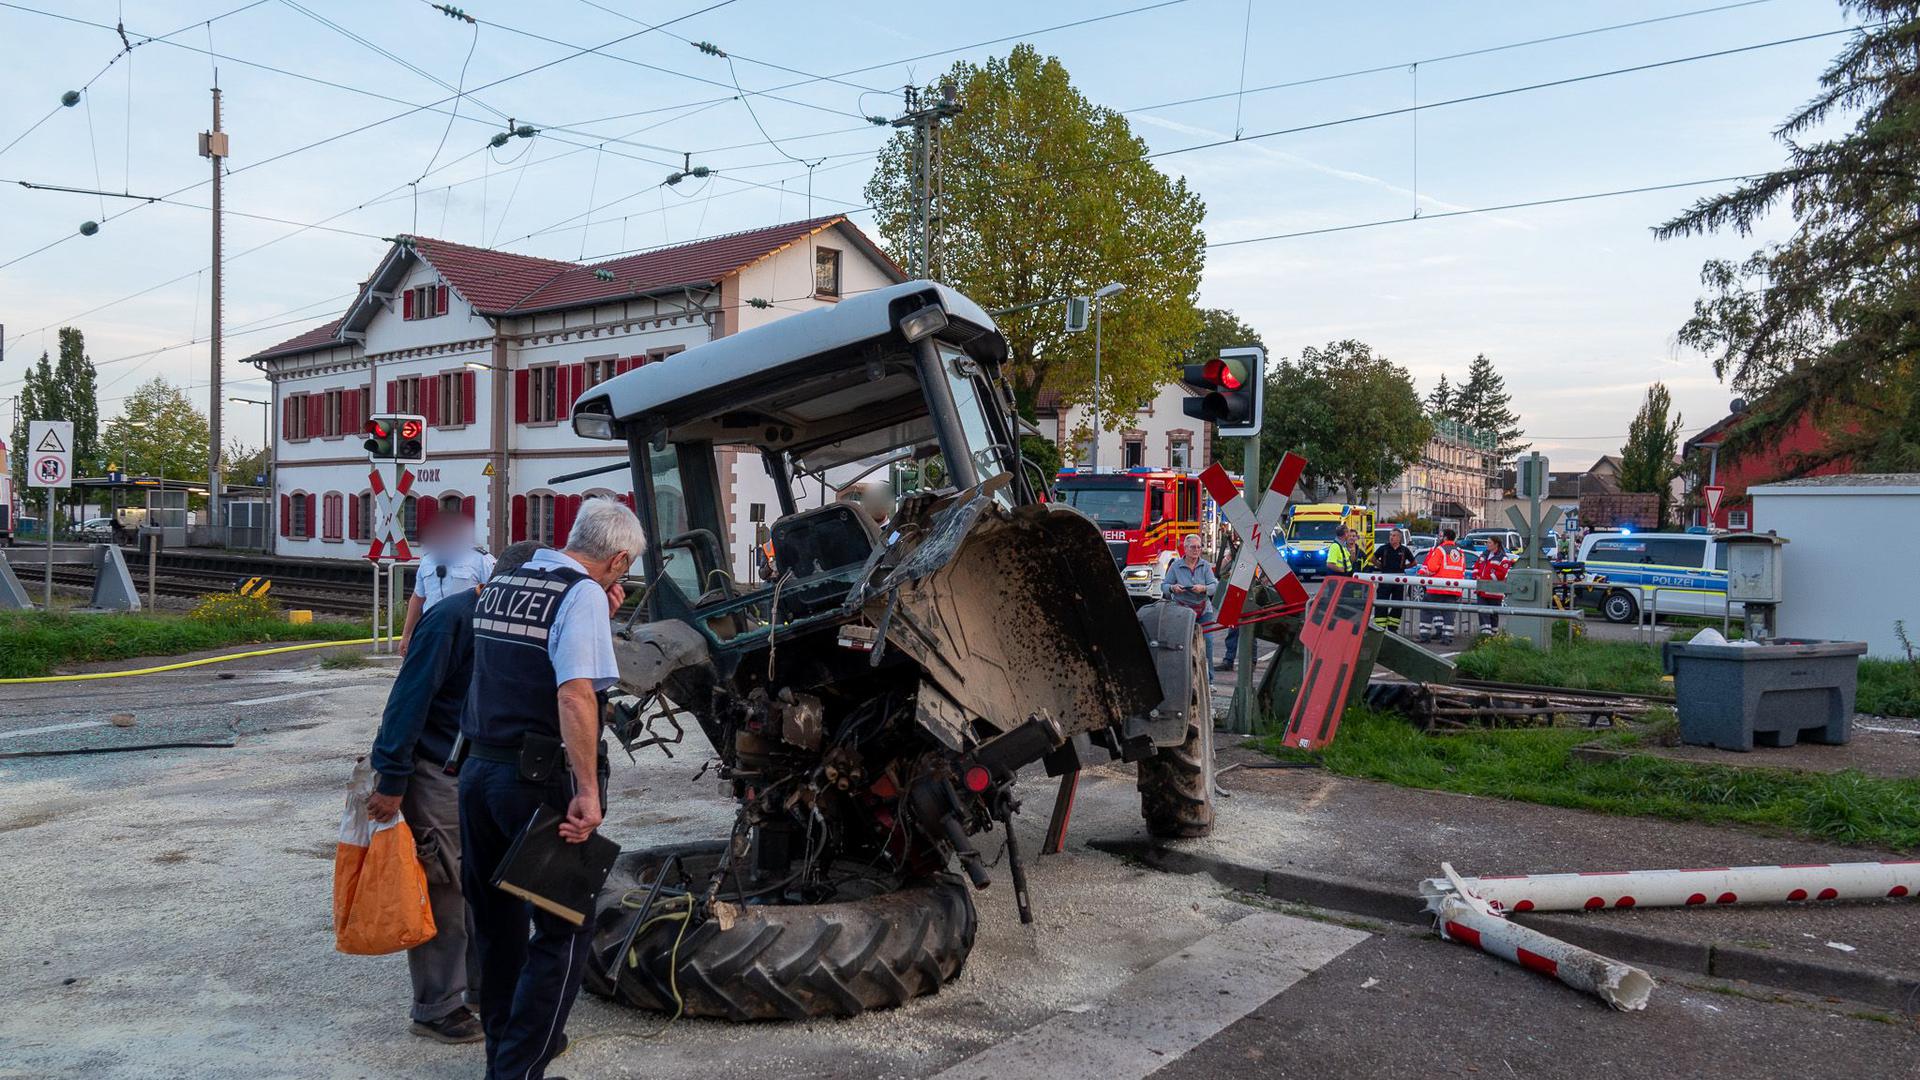 Der Fahrer des Traktors konnte sich noch vor der Kollision in Sicherheit bringen und blieb unverletzt. Die Passagiere konnten ihre Reise mit einem anderem TGV fortsetzen.